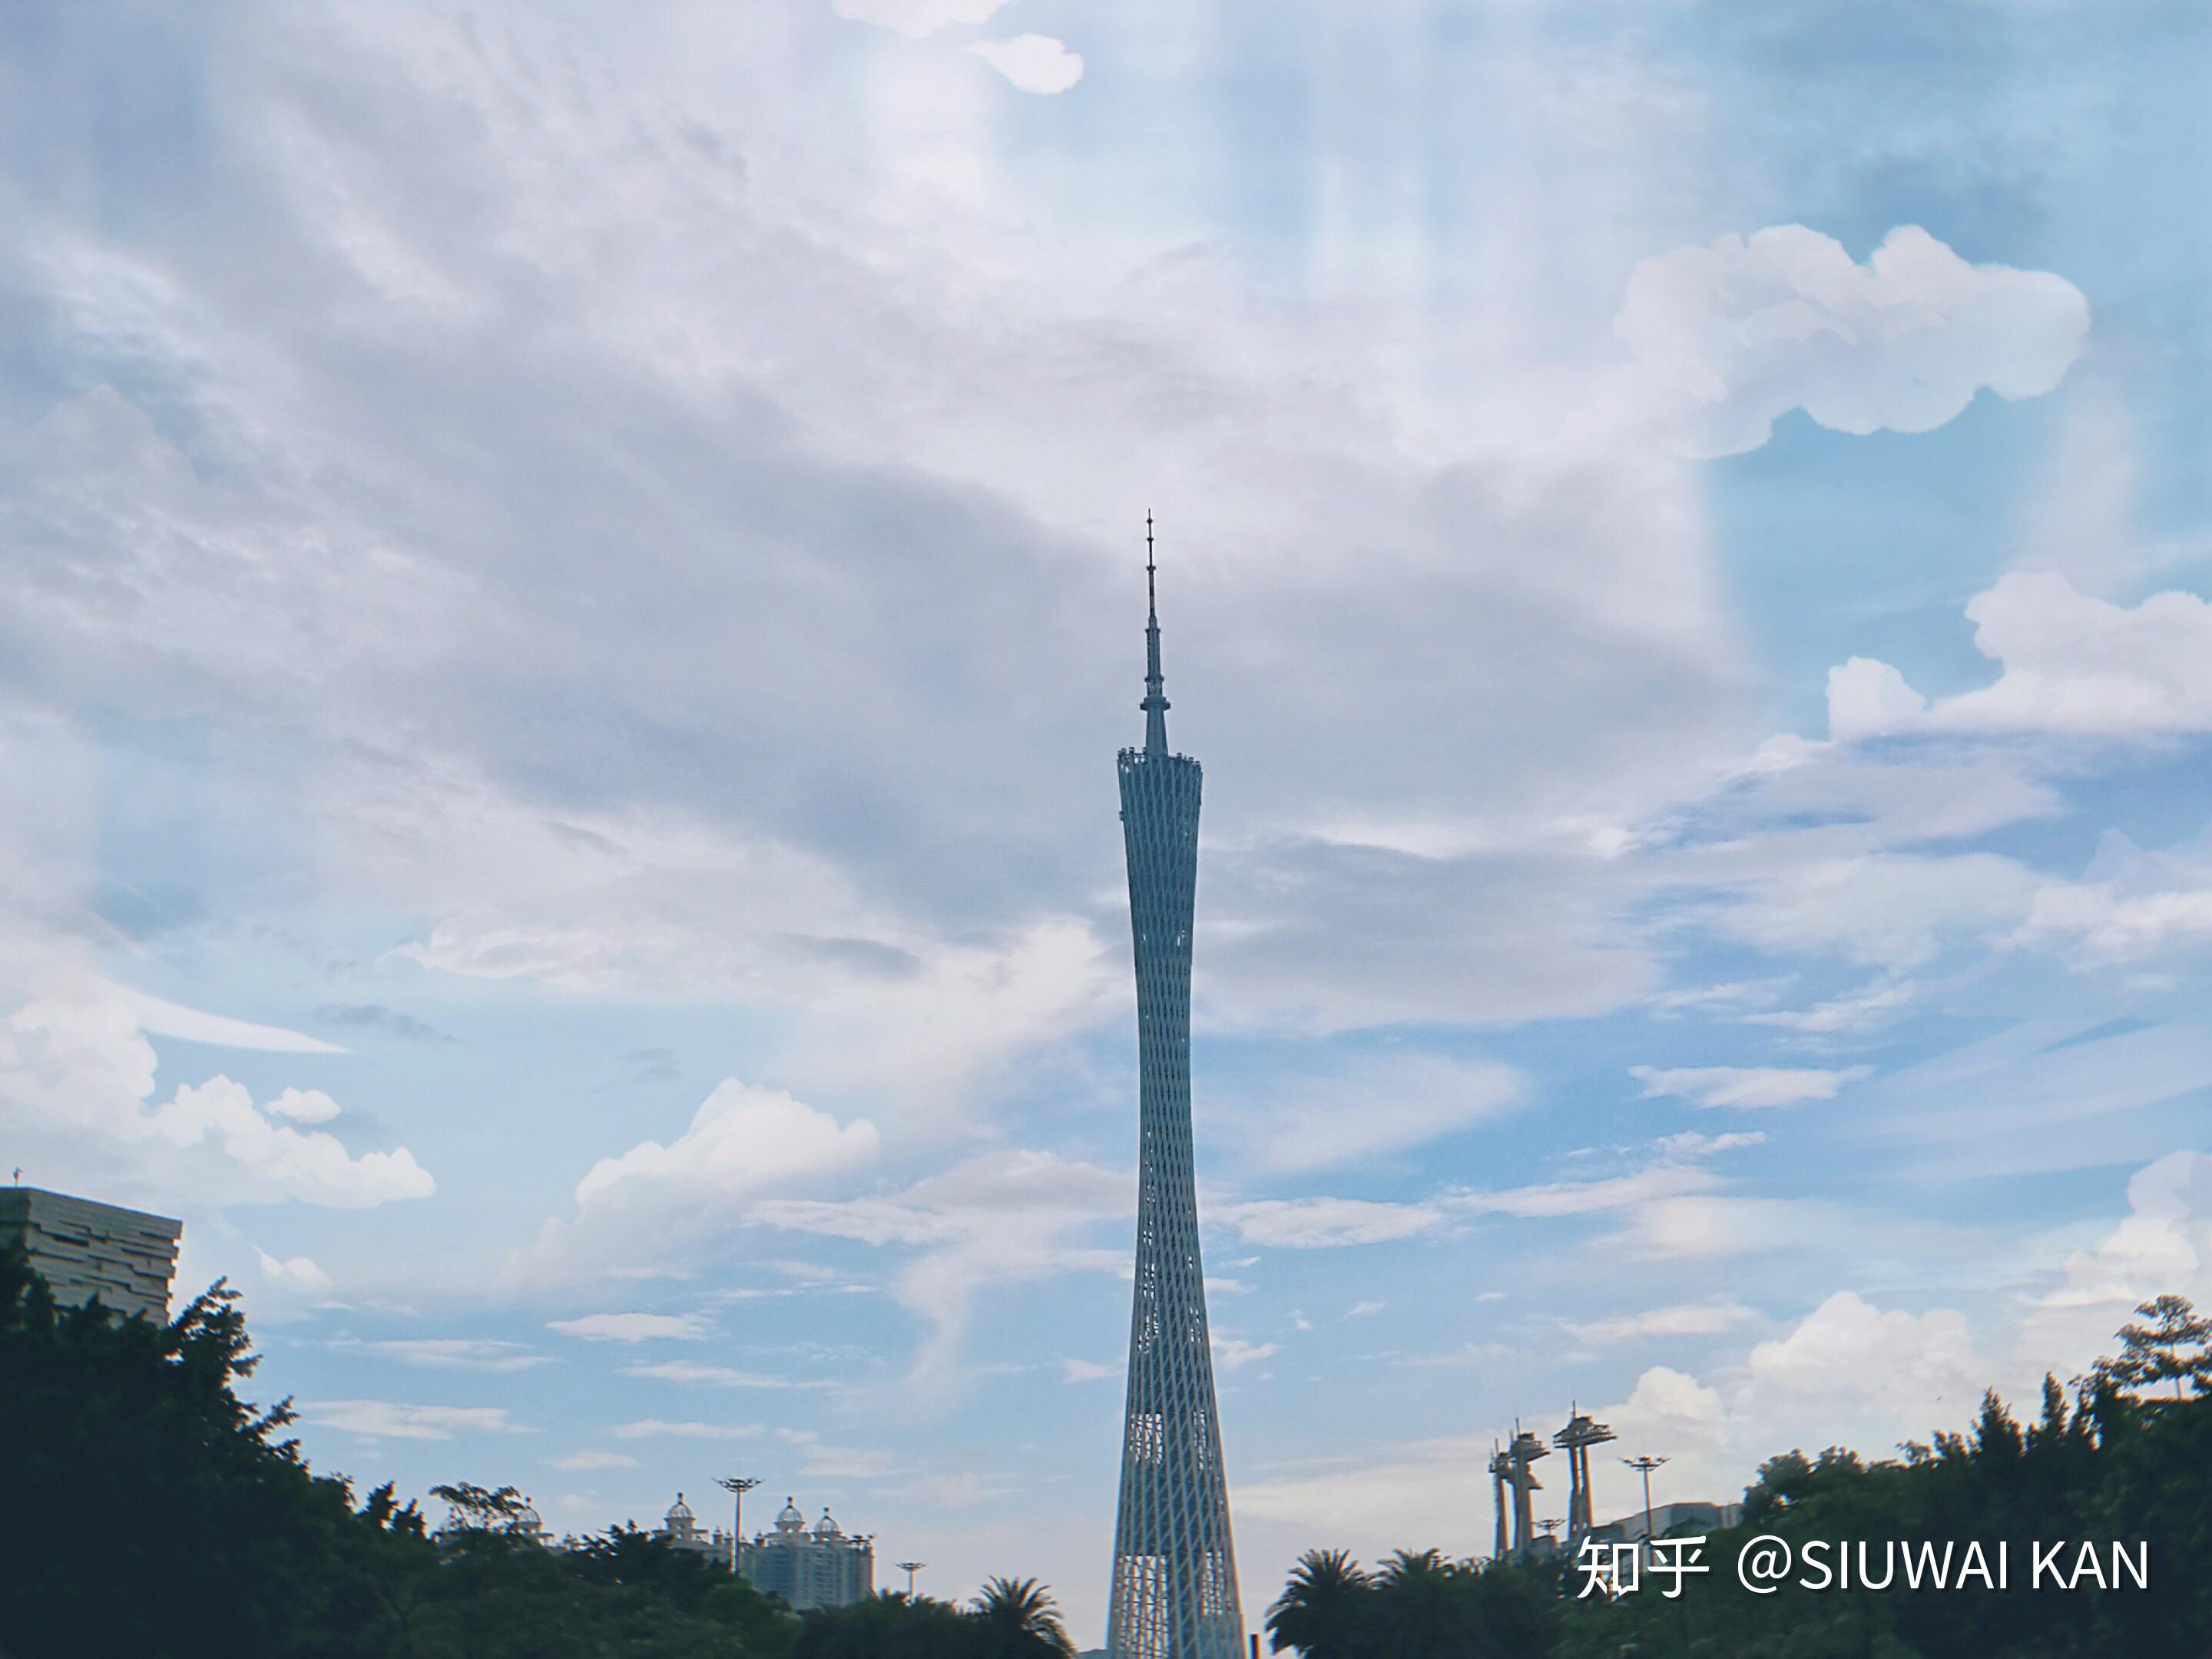 【携程攻略】景点,因为有了广州塔，才有了此广场，可以说是因塔而生，因此广州塔才是这…